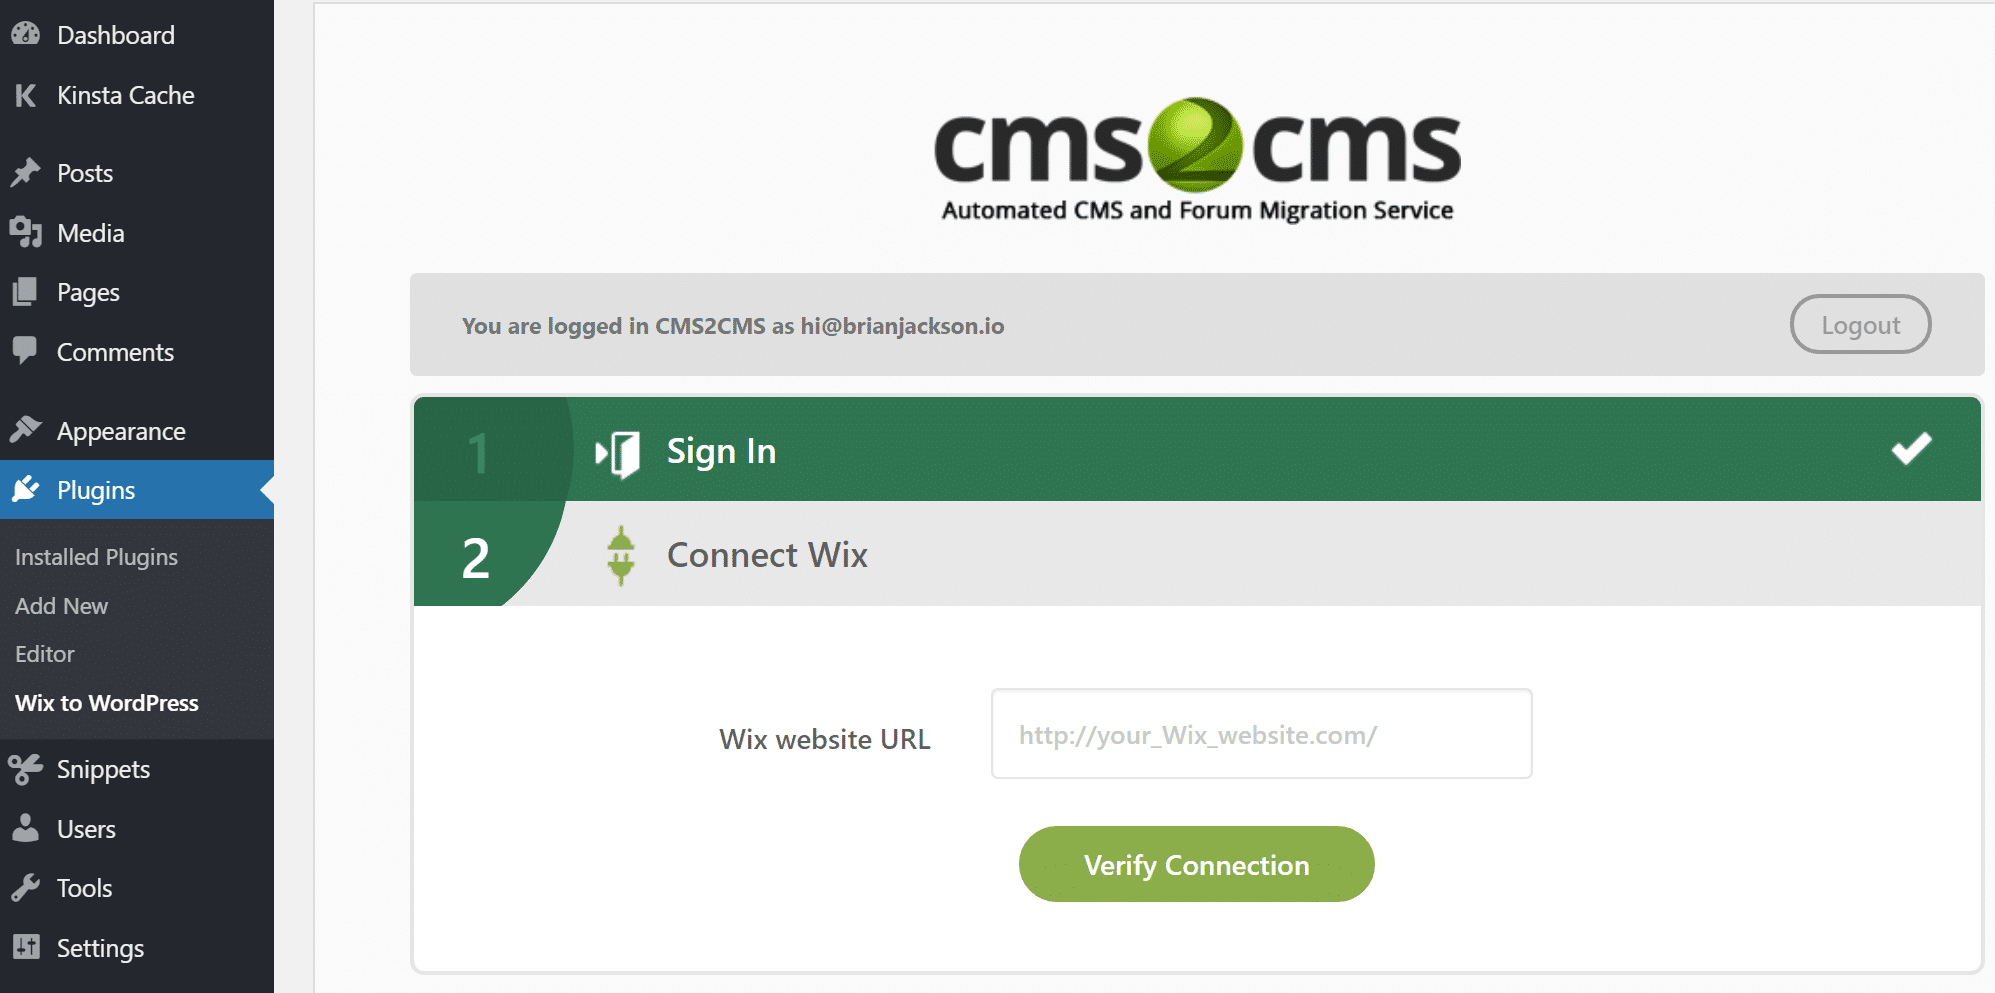 После этого вы будете перенаправлены на веб-сайт CMS2CMS для продолжения миграции